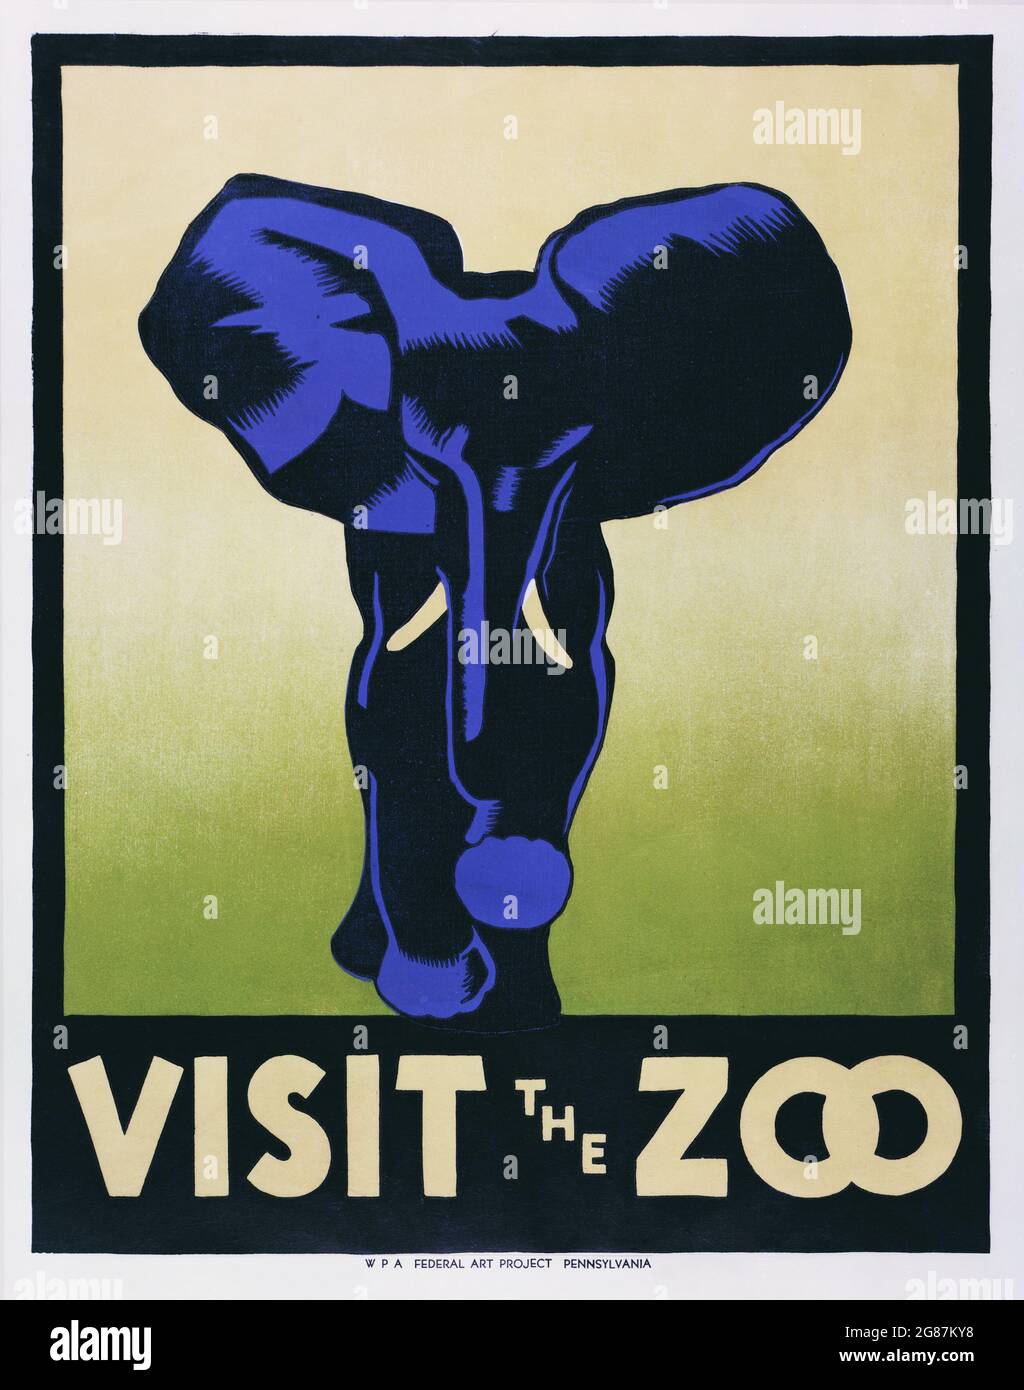 Affiche / signe vintage. VISITEZ LE ZOO. Pennsylvanie, WPA Federal Art Project. C 1936. Affiche conçue par Hugh Stevenson. Gravure sur bois. Banque D'Images